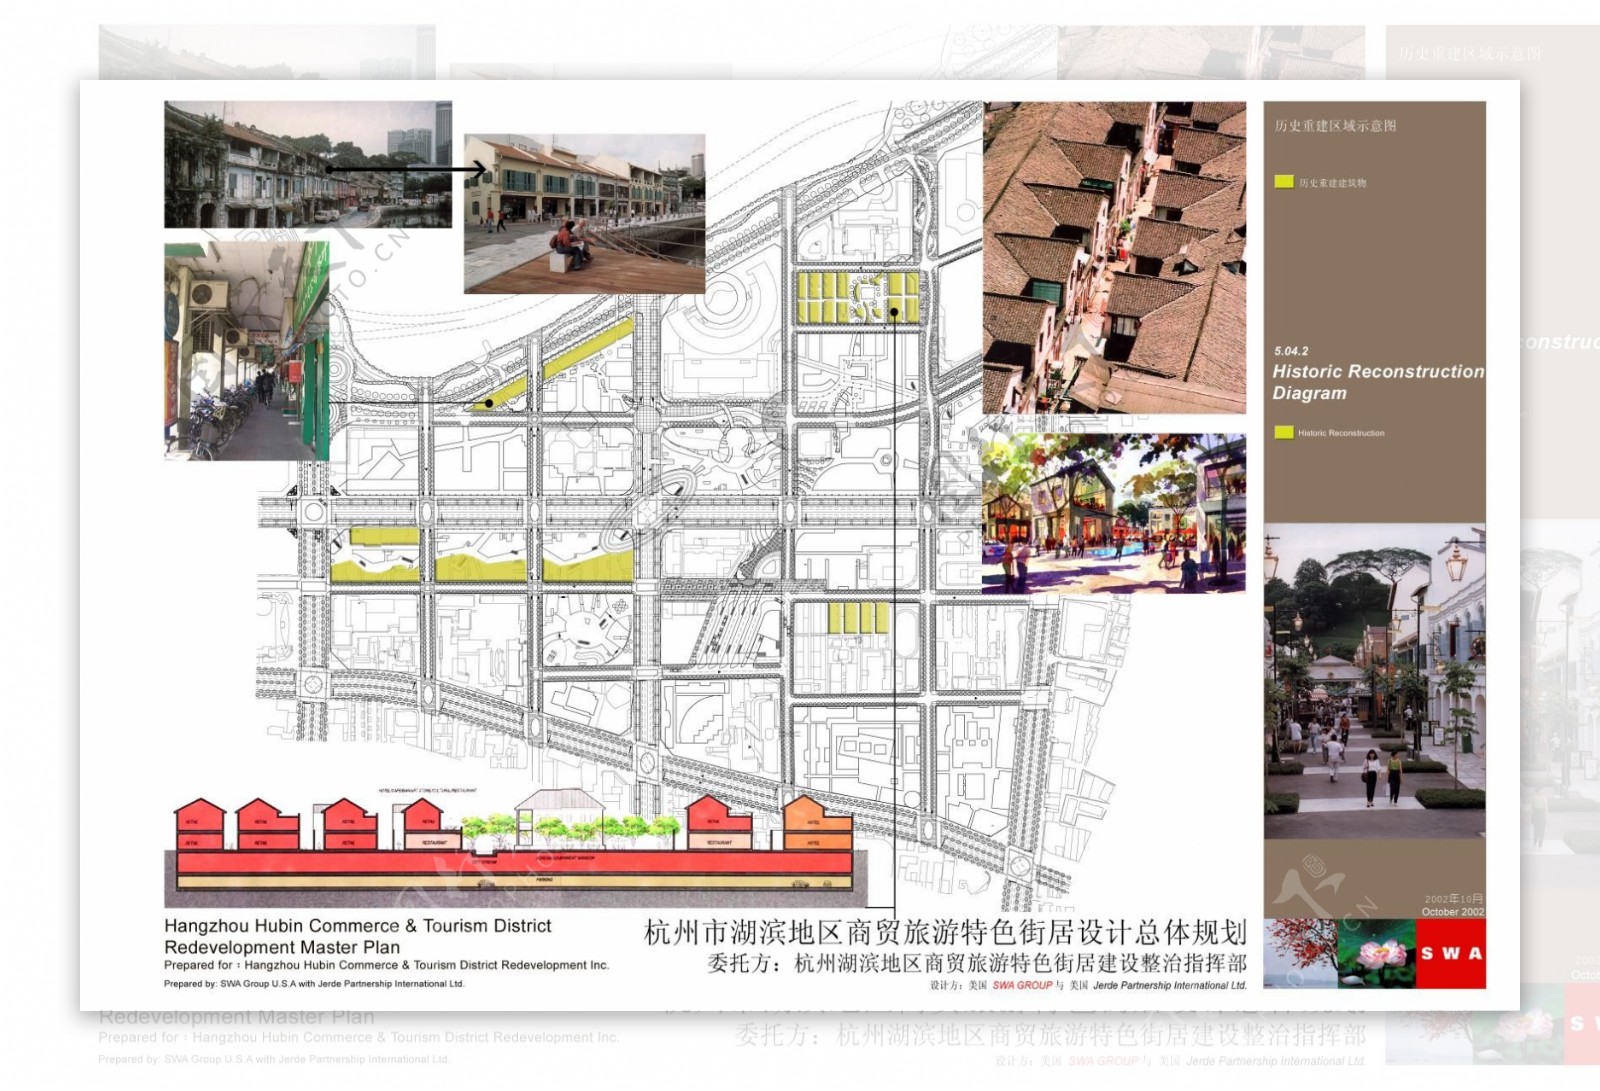 33.杭州市湖滨地区商贸旅游特色街居设计总体规划